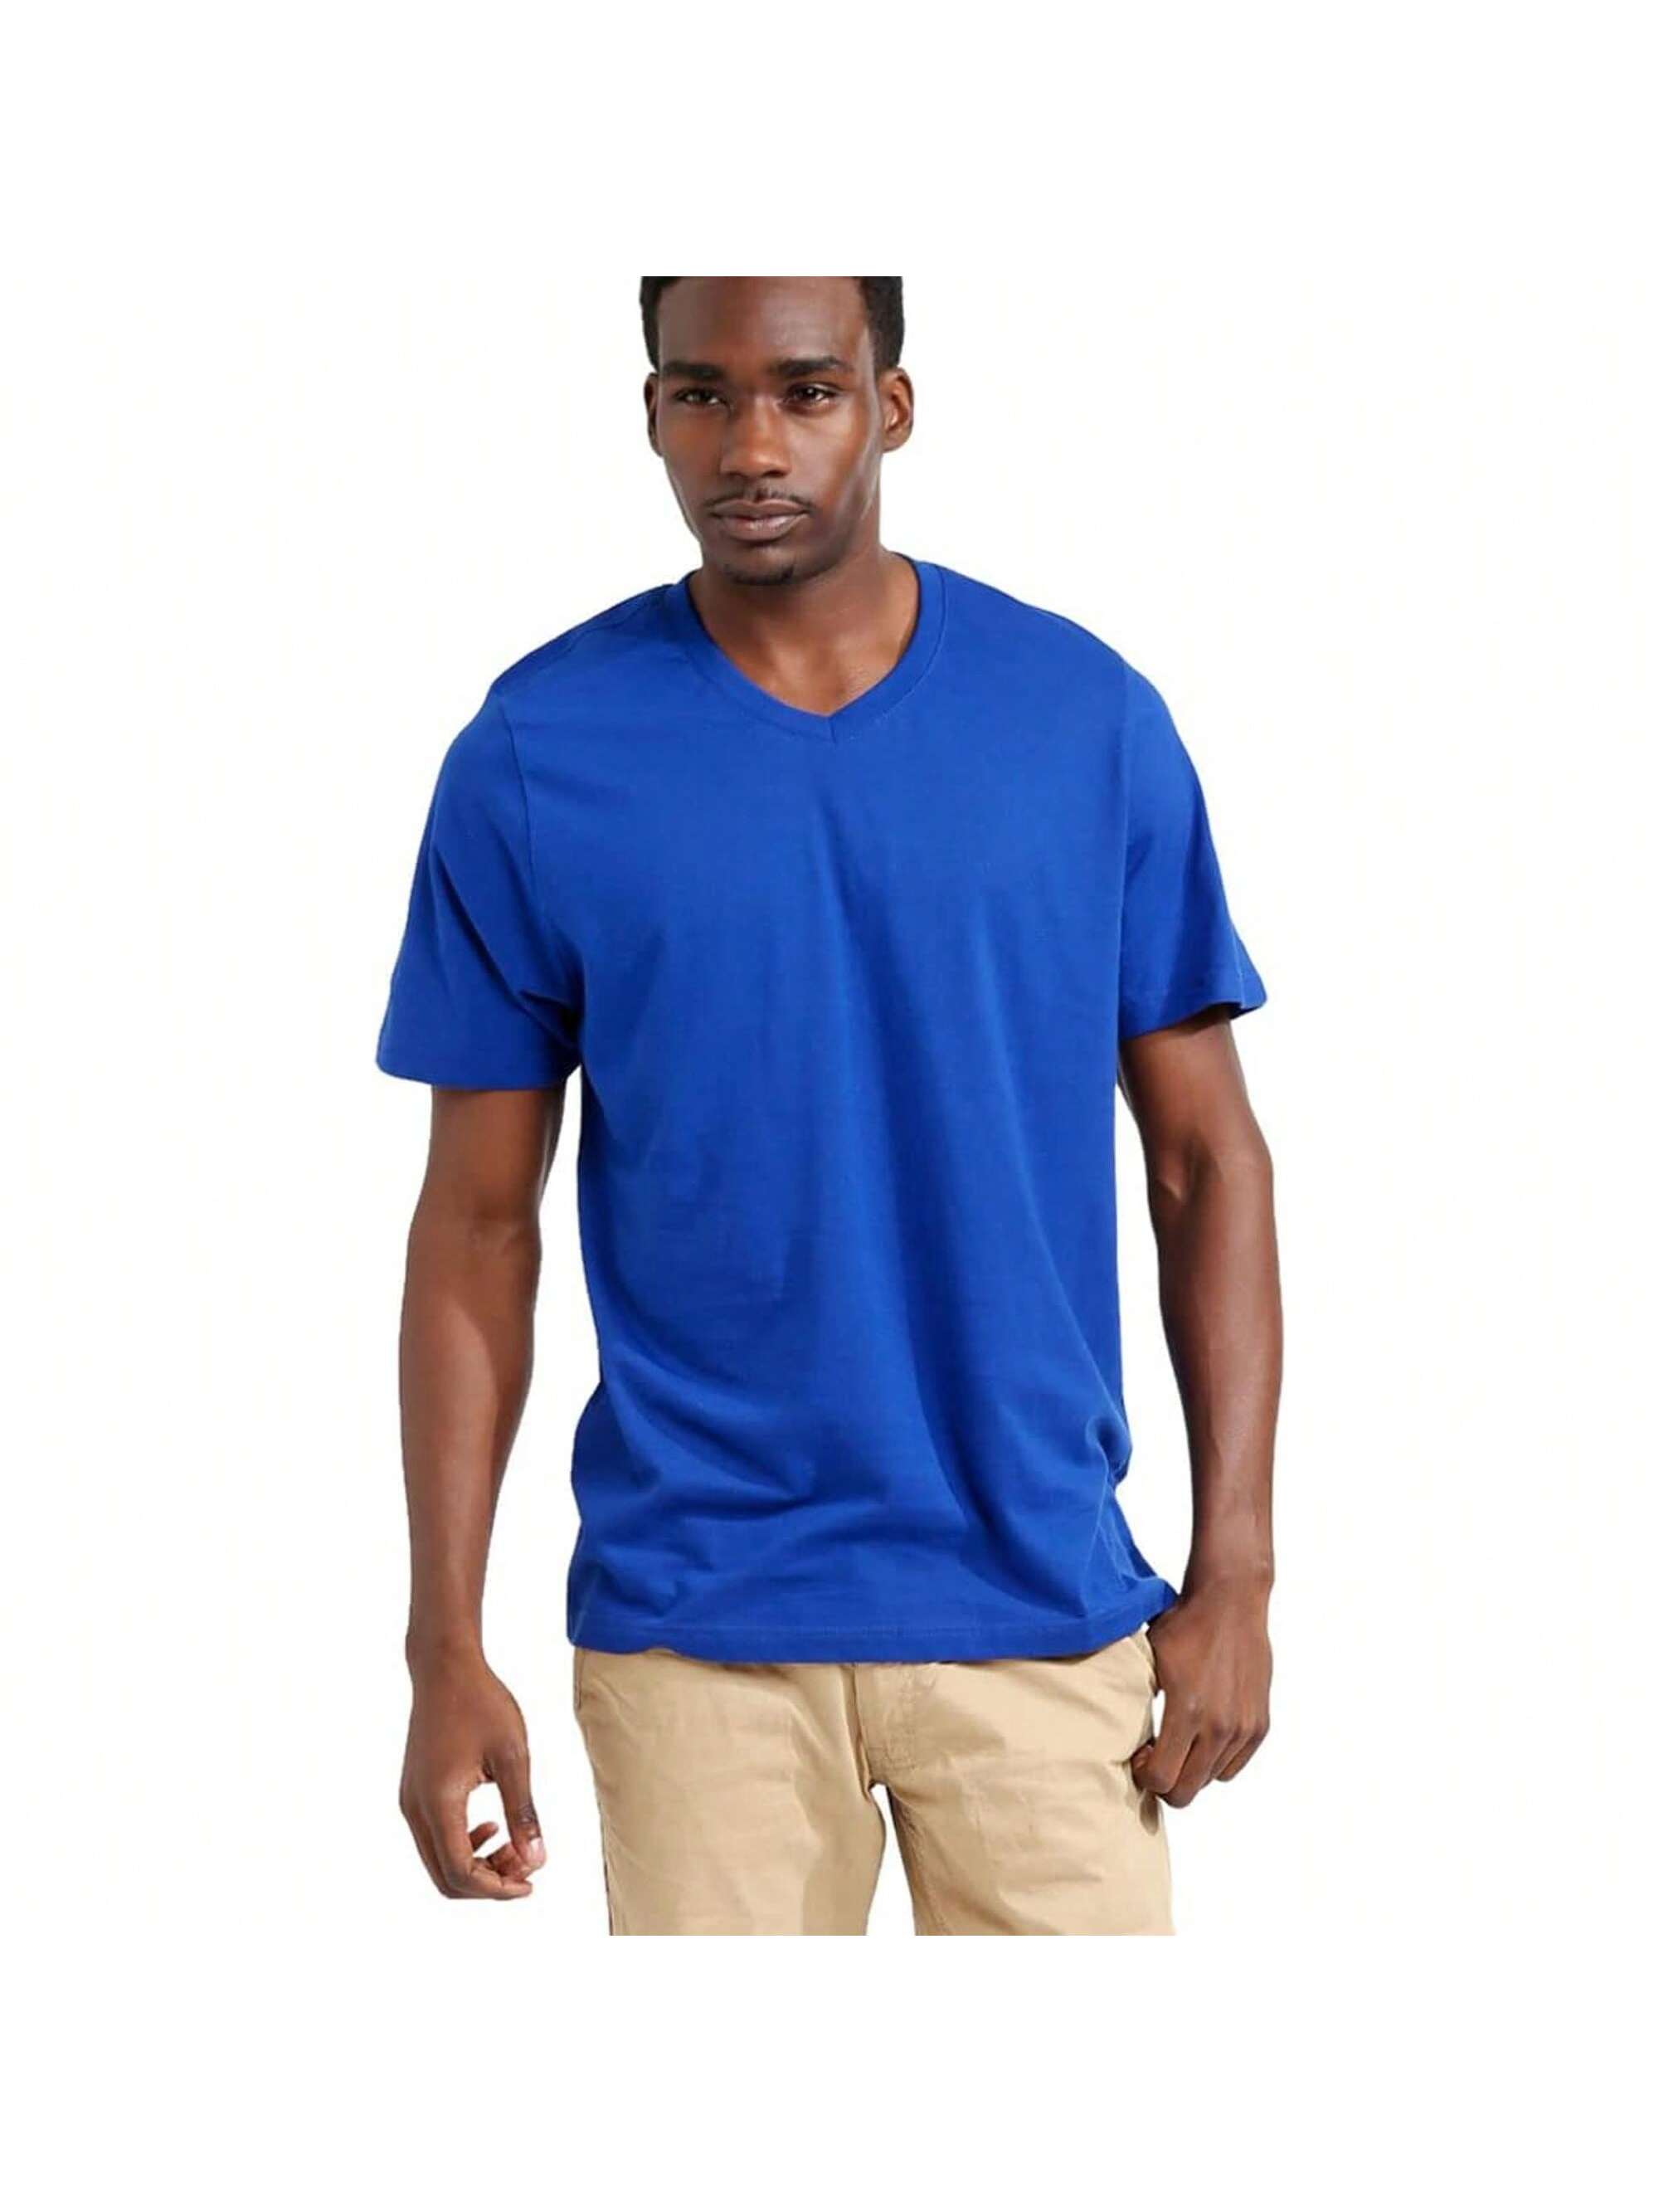 Мужская хлопковая футболка премиум-класса с v-образным вырезом Rich Cotton BLK-M, королевский футболка мужская с v обр вырезом victory 150 темно синяя размер m